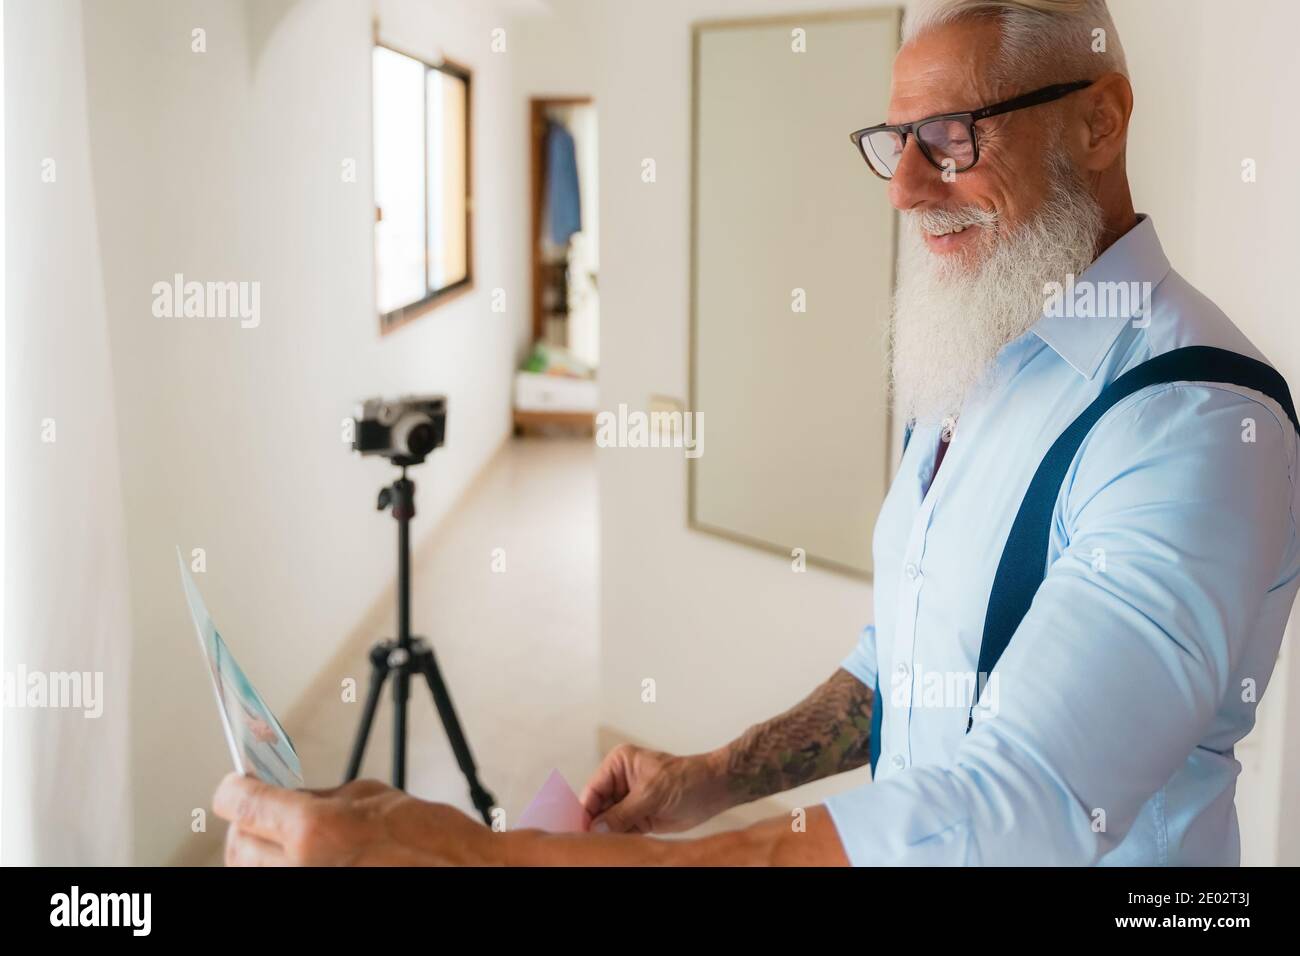 Photographe à la recherche de ses photos pour le travail. Homme travaillant dans le studio à domicile. Photos professionnelles pour album. Concept de travail. Banque D'Images